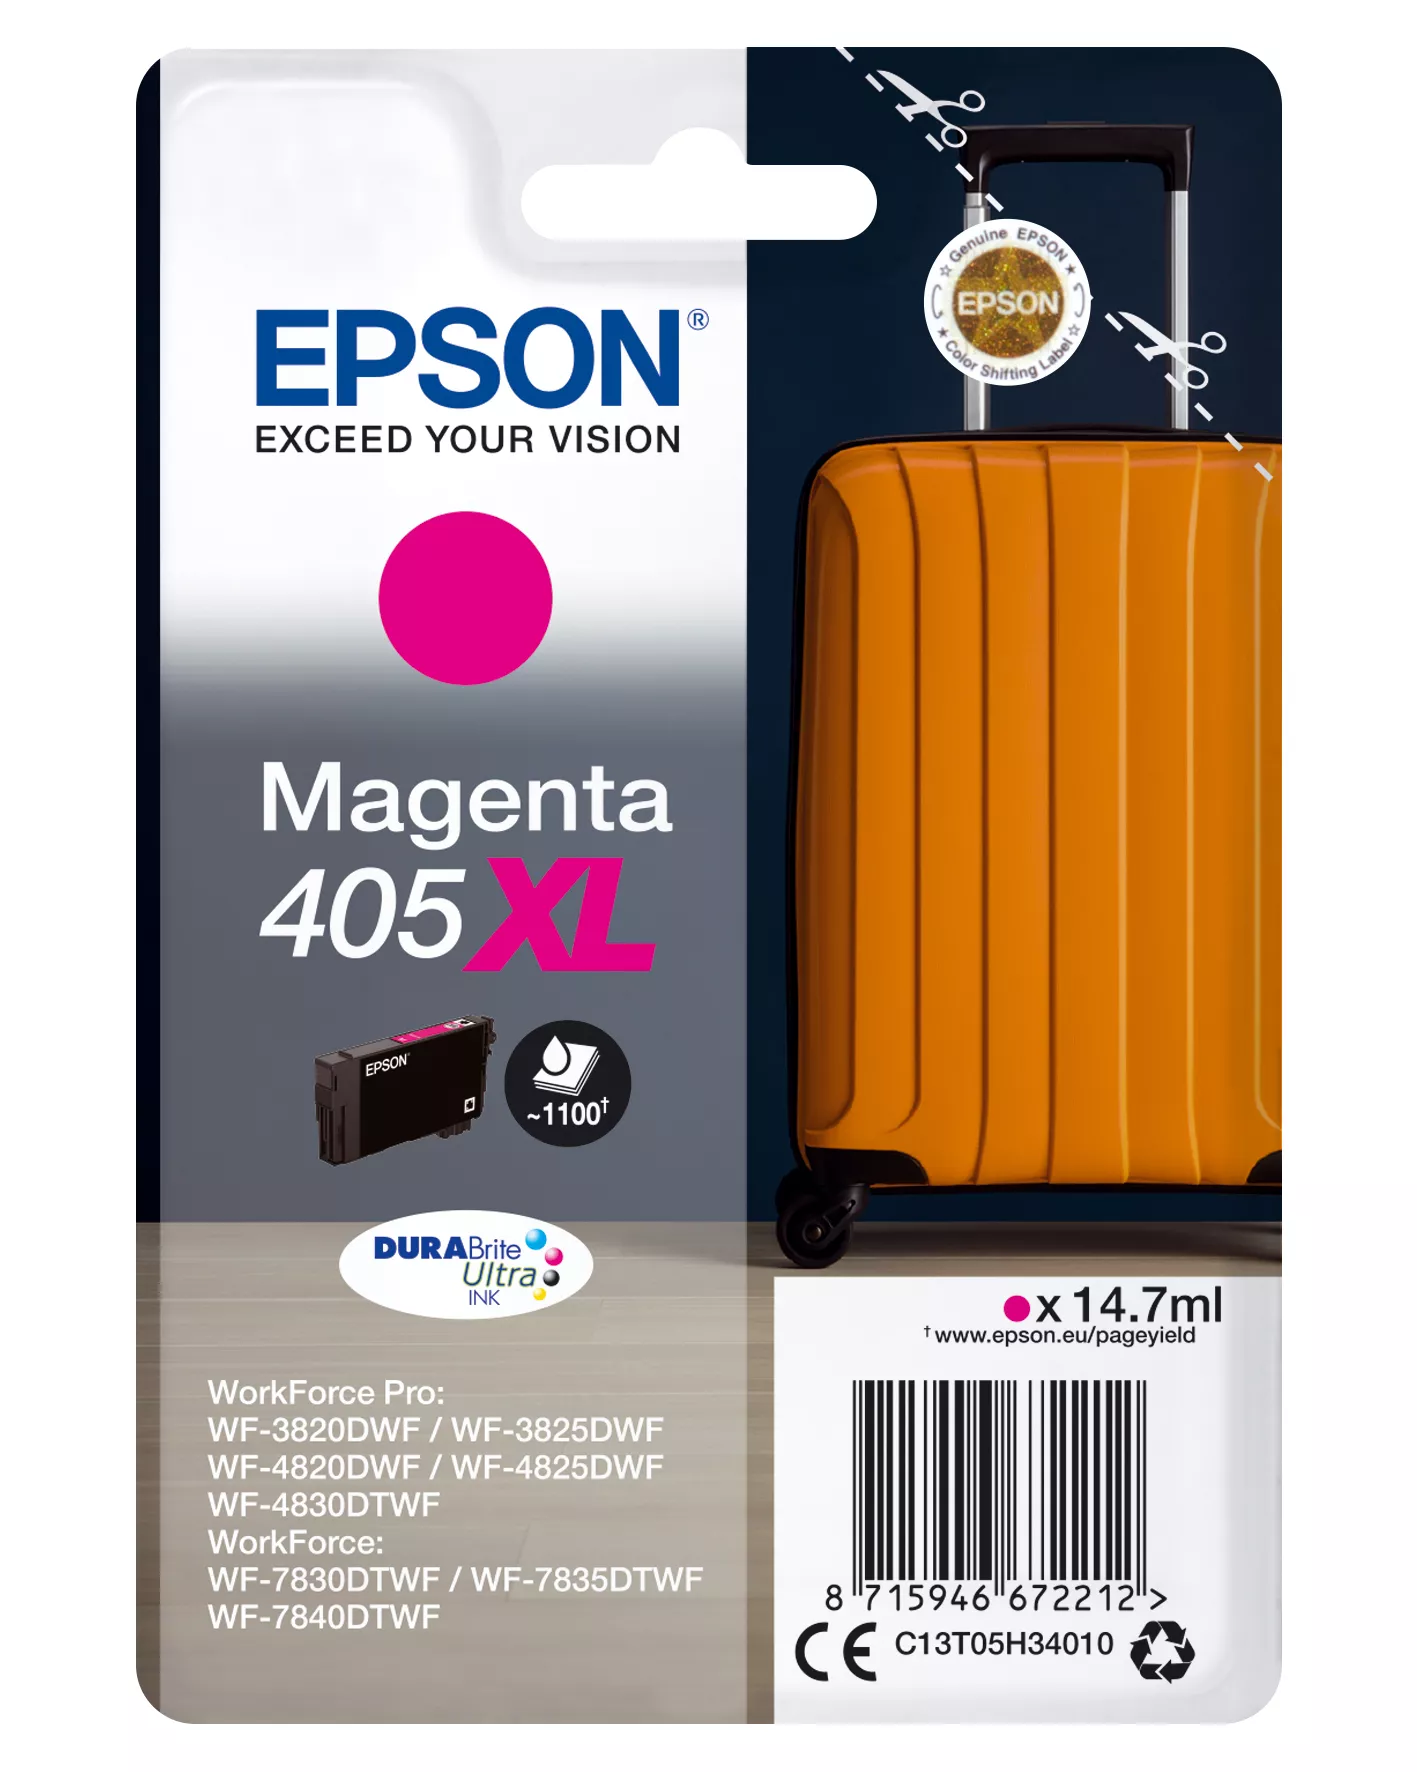 Achat EPSON Singlepack Magenta 405XL DURABrite Ultra Ink et autres produits de la marque Epson